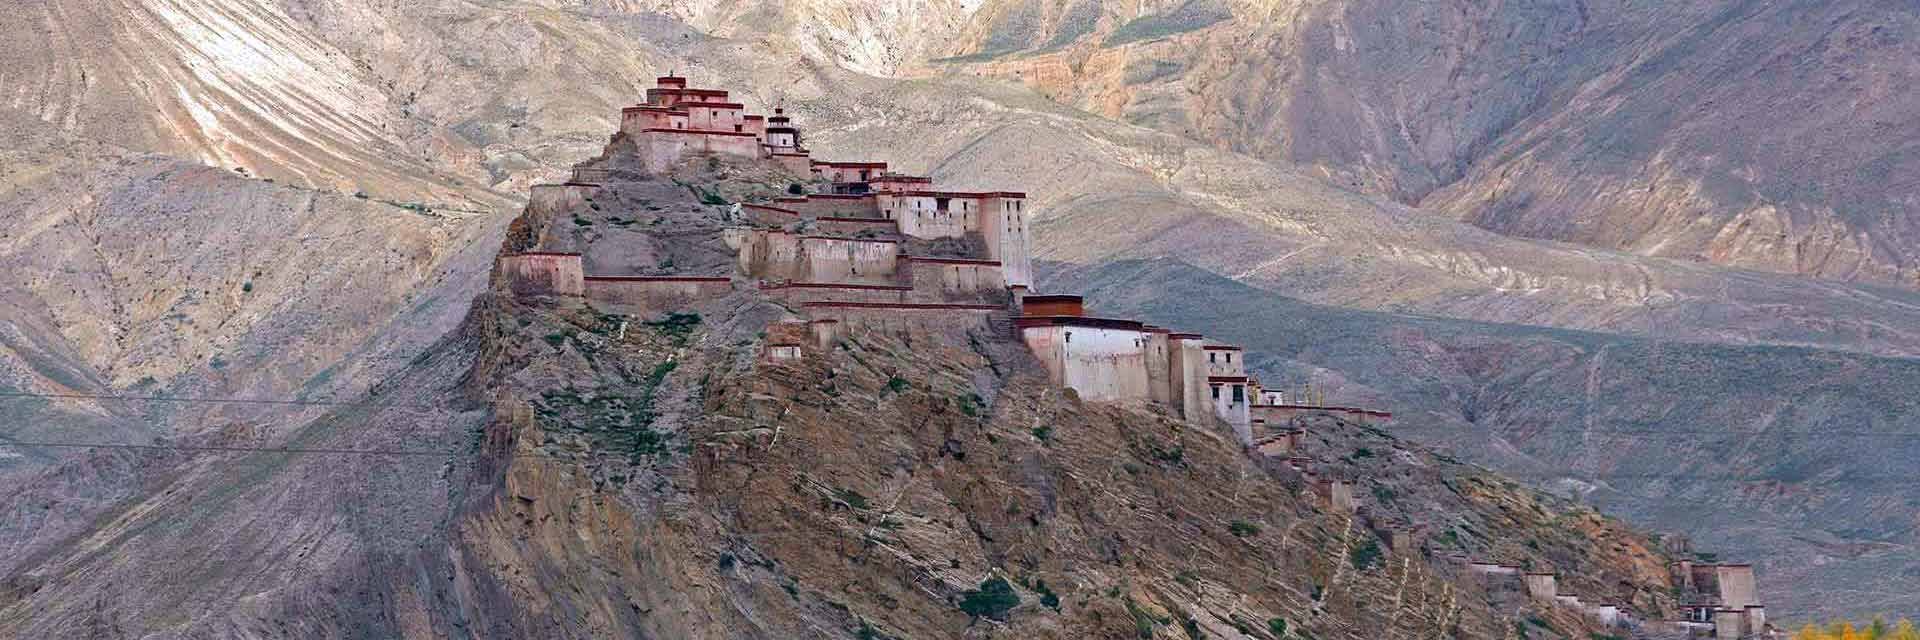 Lhasa Gyantse Shigaste Tour